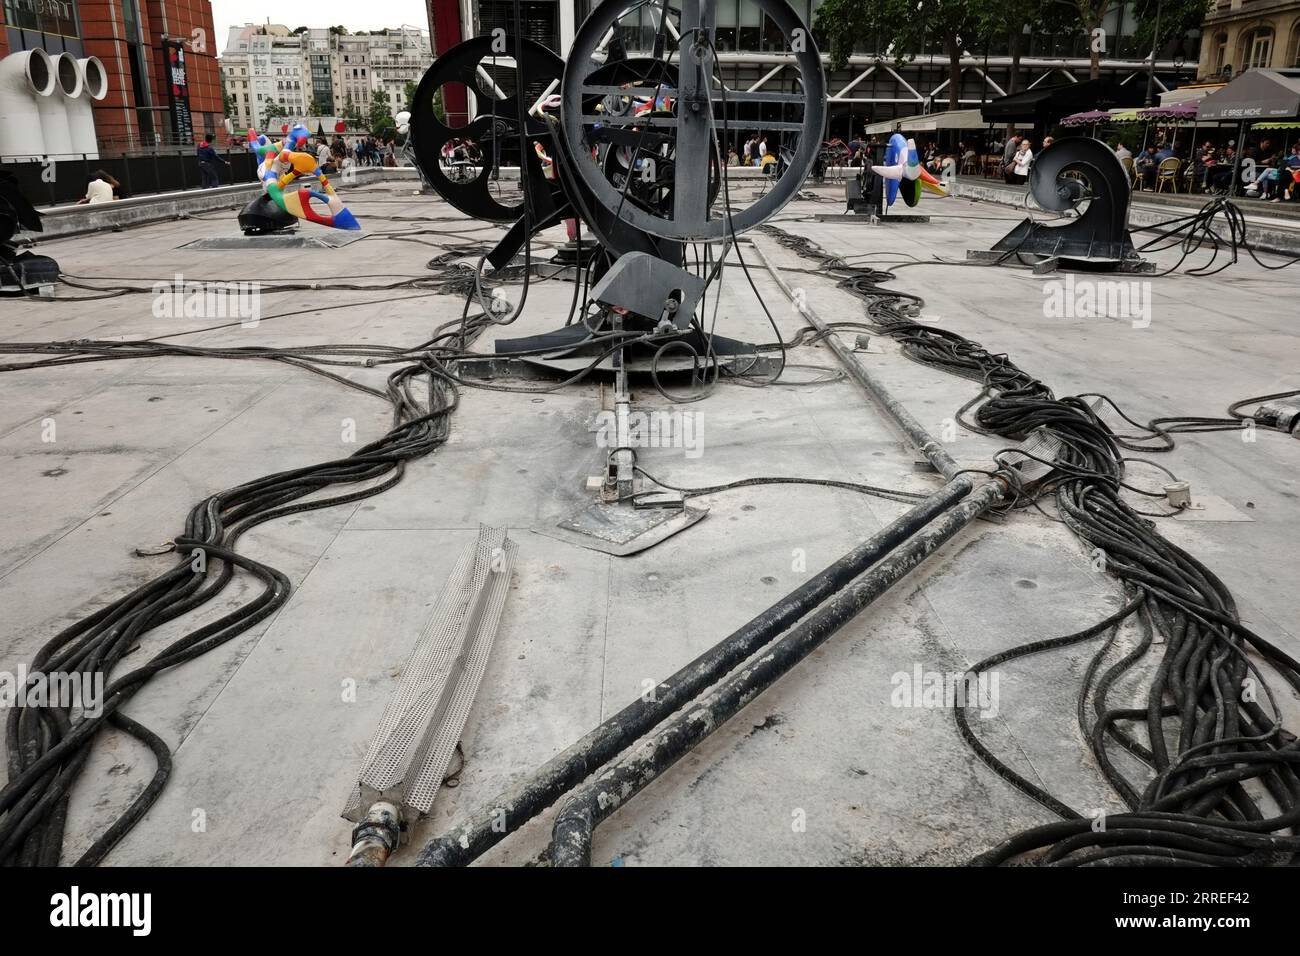 Drainés pour entretien, les câbles et tuyaux qui traversent la fontaine Stravinsky sont visibles, place Igor Stravinsky, Centre Pompidou Paris, France Banque D'Images